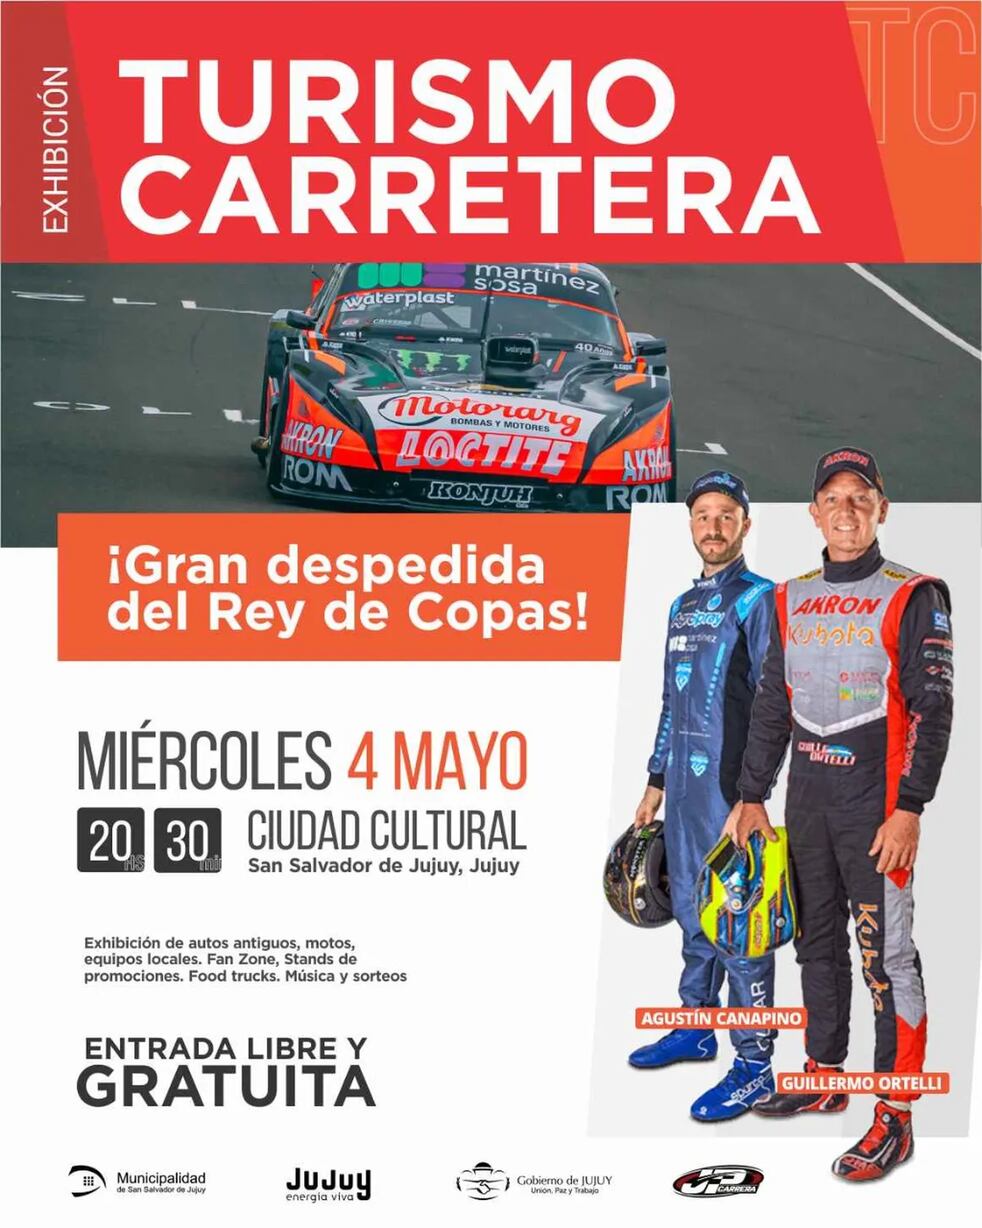 Afiche promocional de la exhibición del Turismo Carretera en Jujuy, con los campeones Guillermo Ortelli y Agustín Canapino.